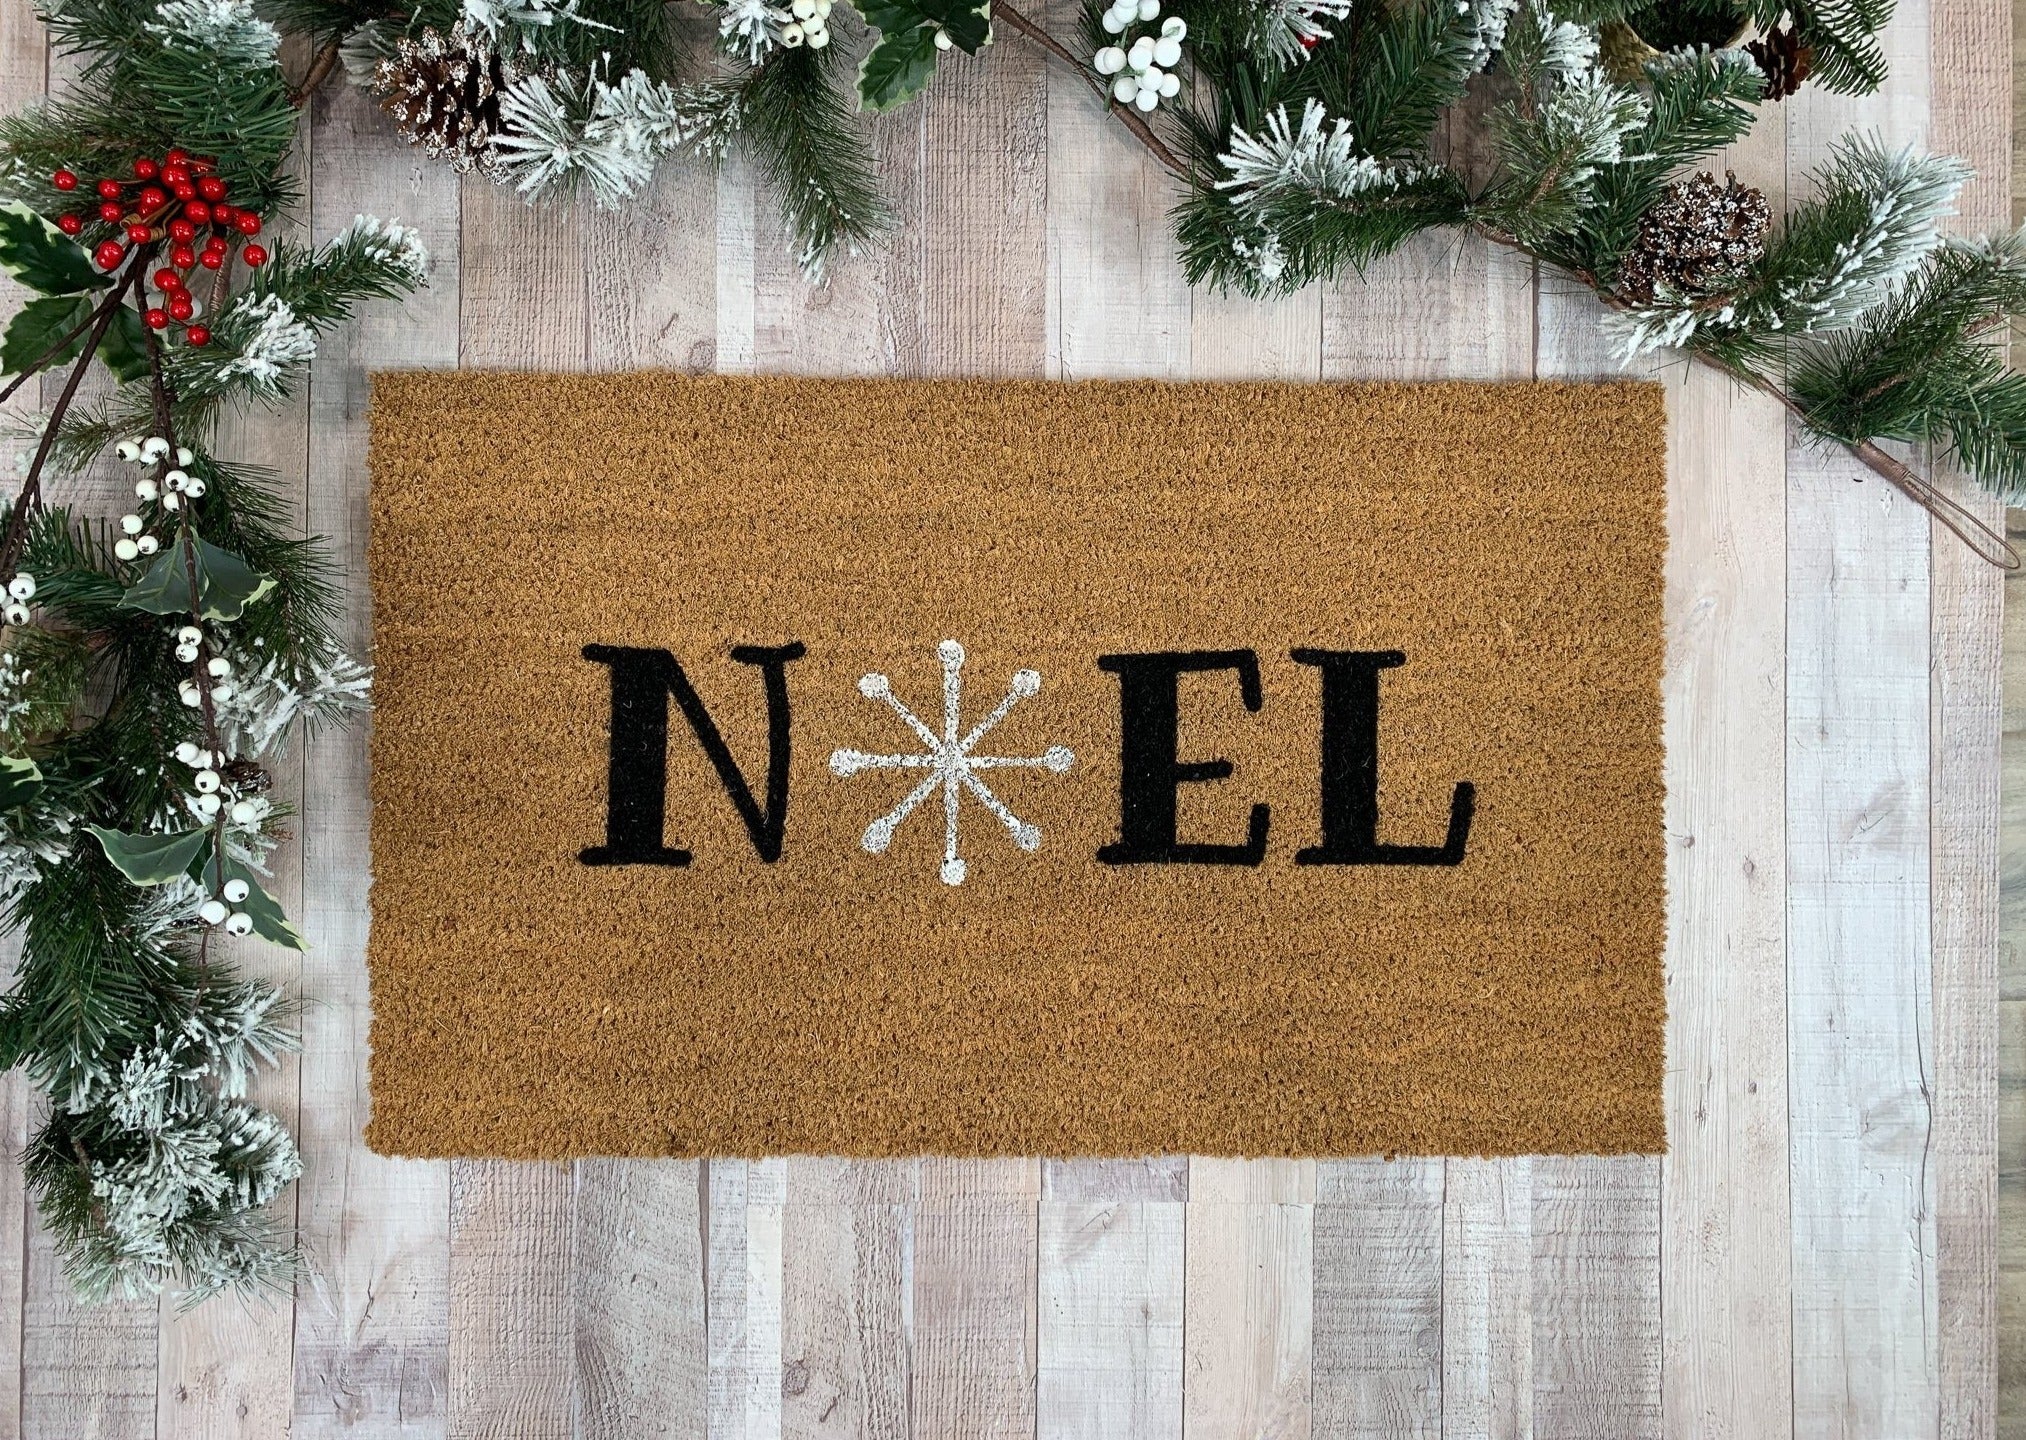 Stay Cozy Buffalo Plaid Doormat  Winter Doormats by Nickel Designs